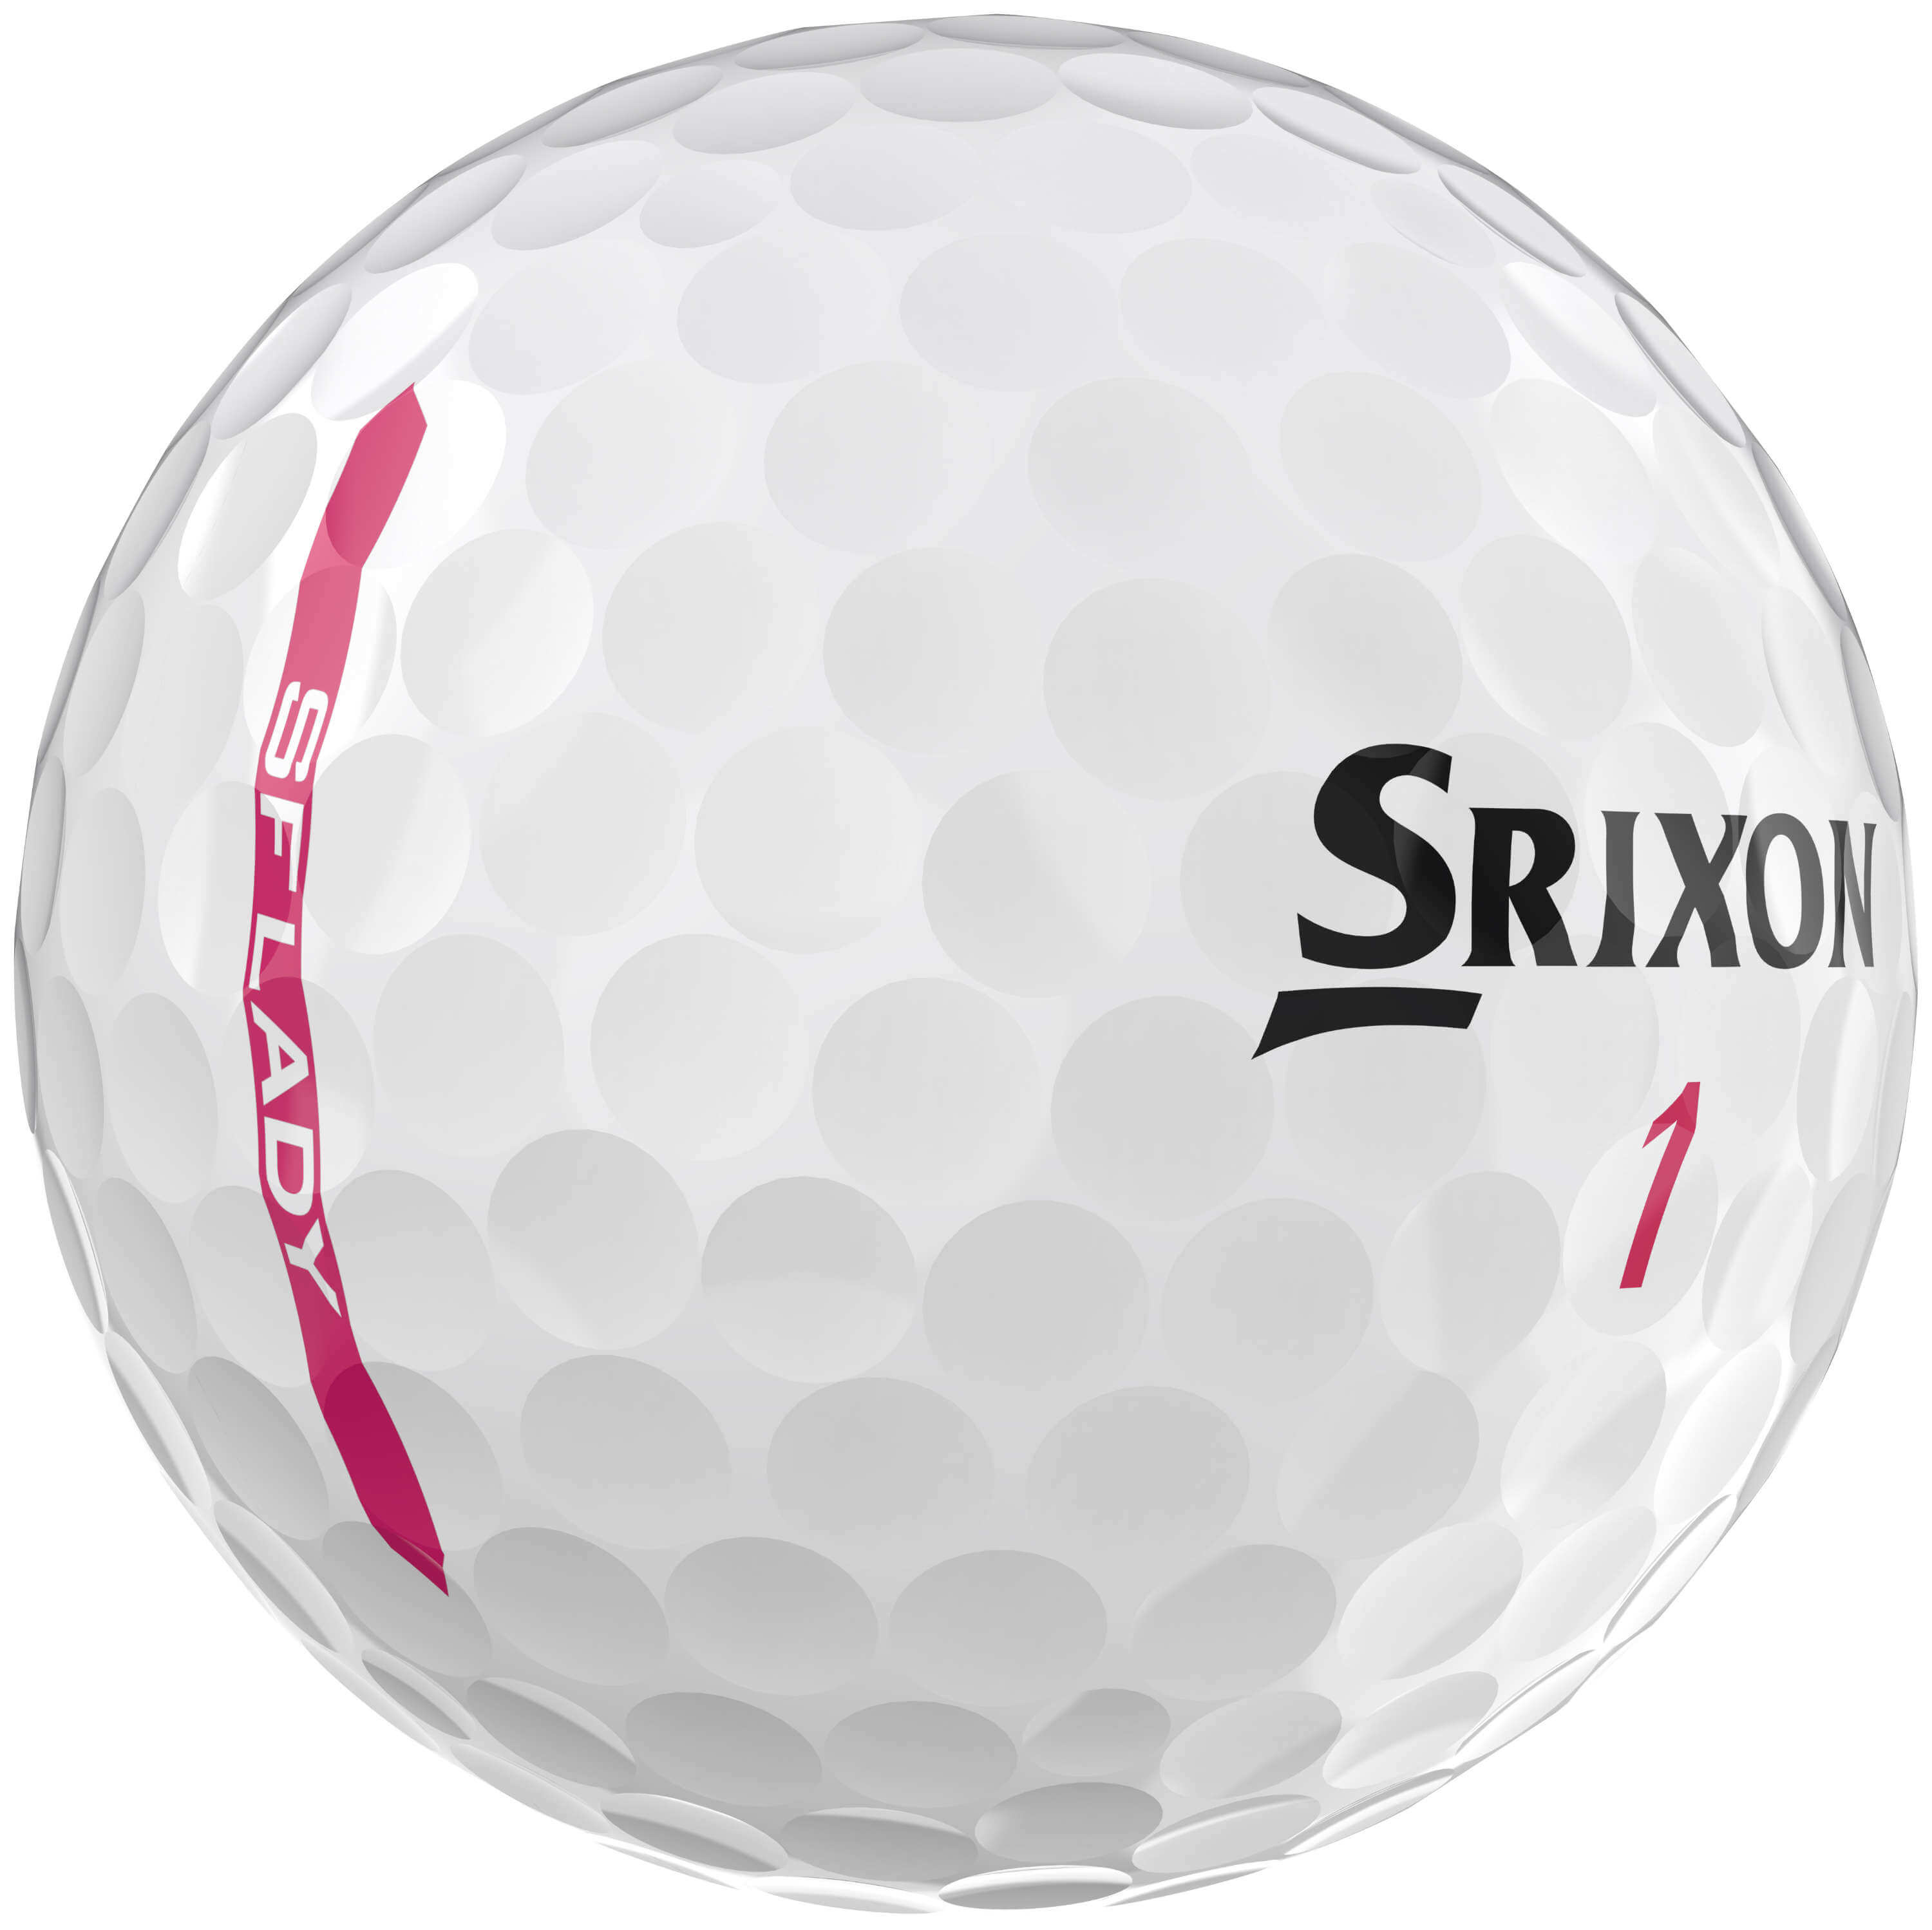 Srixon Soft Feel Lady Golfbälle